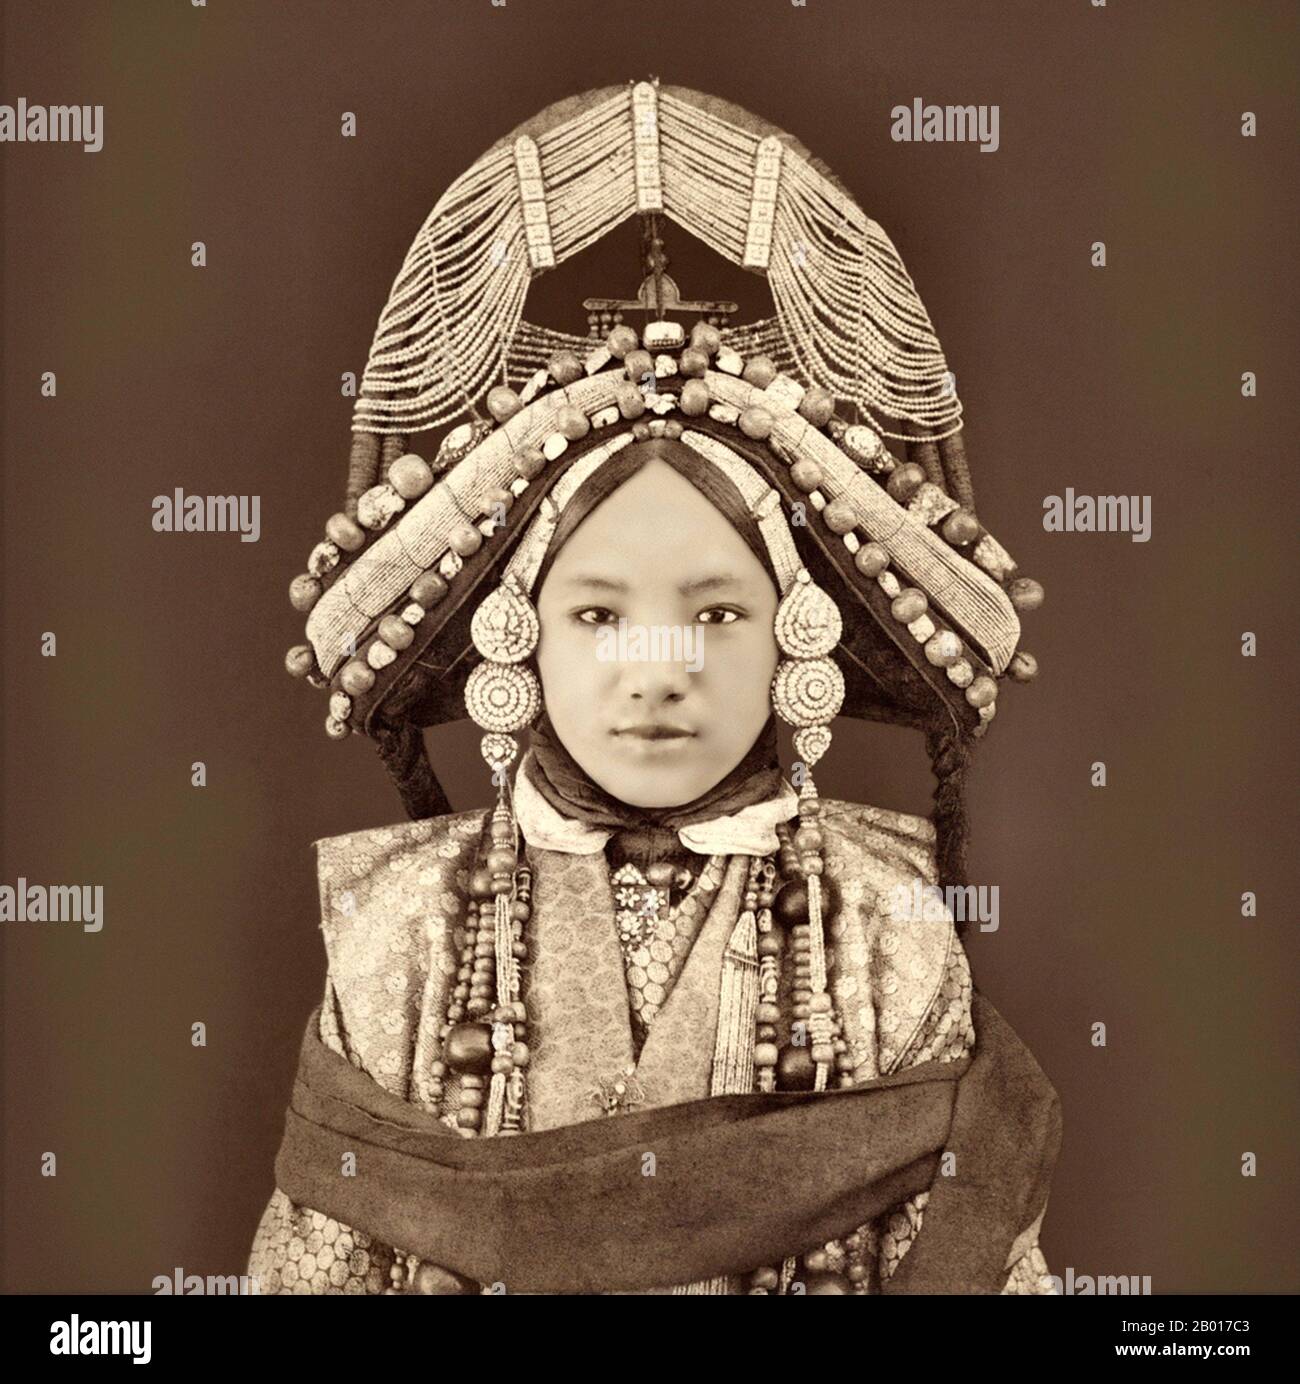 Chine/ Tibet: Un lhacham tibétain ou princesse en vêtements traditionnels par Sarat Chandra Das (18 Jule 1849 - 5 janvier 1917), c.1879. Une photo ancienne par Sarat Chandra Das d'un prince tibétain (lhacham) portant des vêtements traditionnels, des bijoux lourds et une adresse très élaborée. Banque D'Images